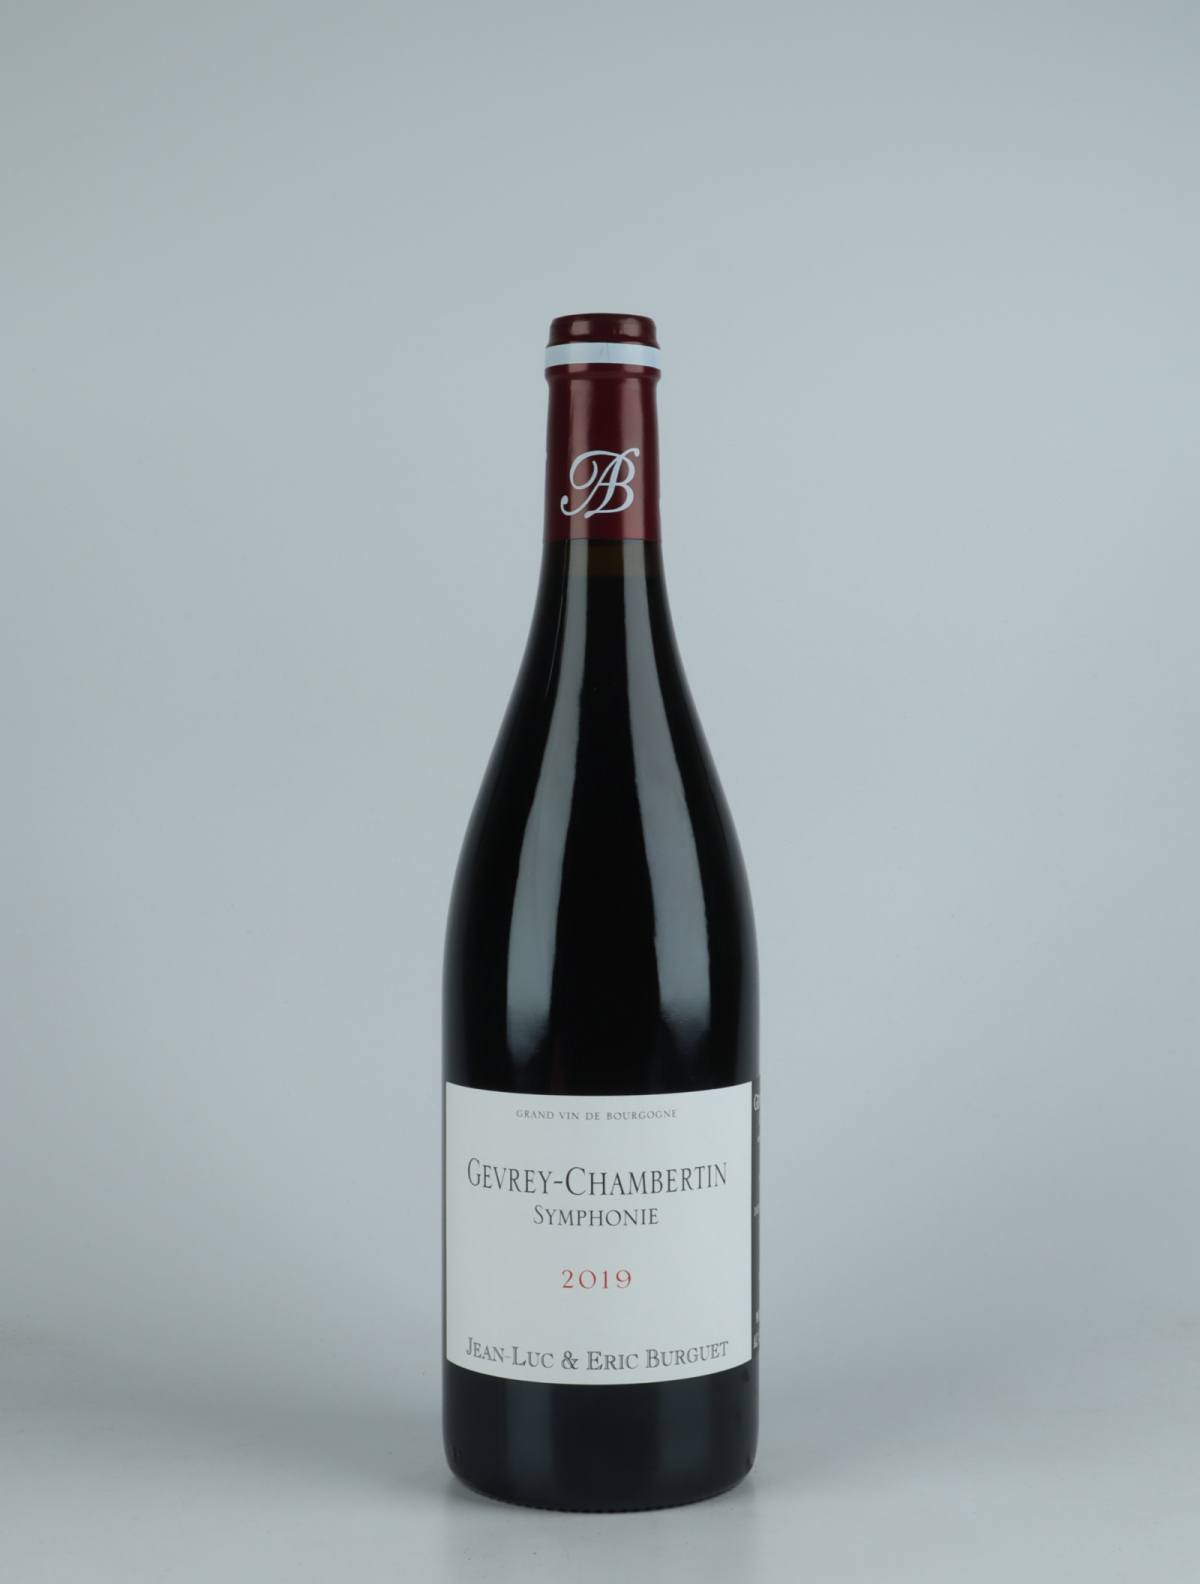 En flaske 2019 Gevrey-Chambertin - Symphonie Rødvin fra Jean-Luc & Eric Burguet, Bourgogne i Frankrig